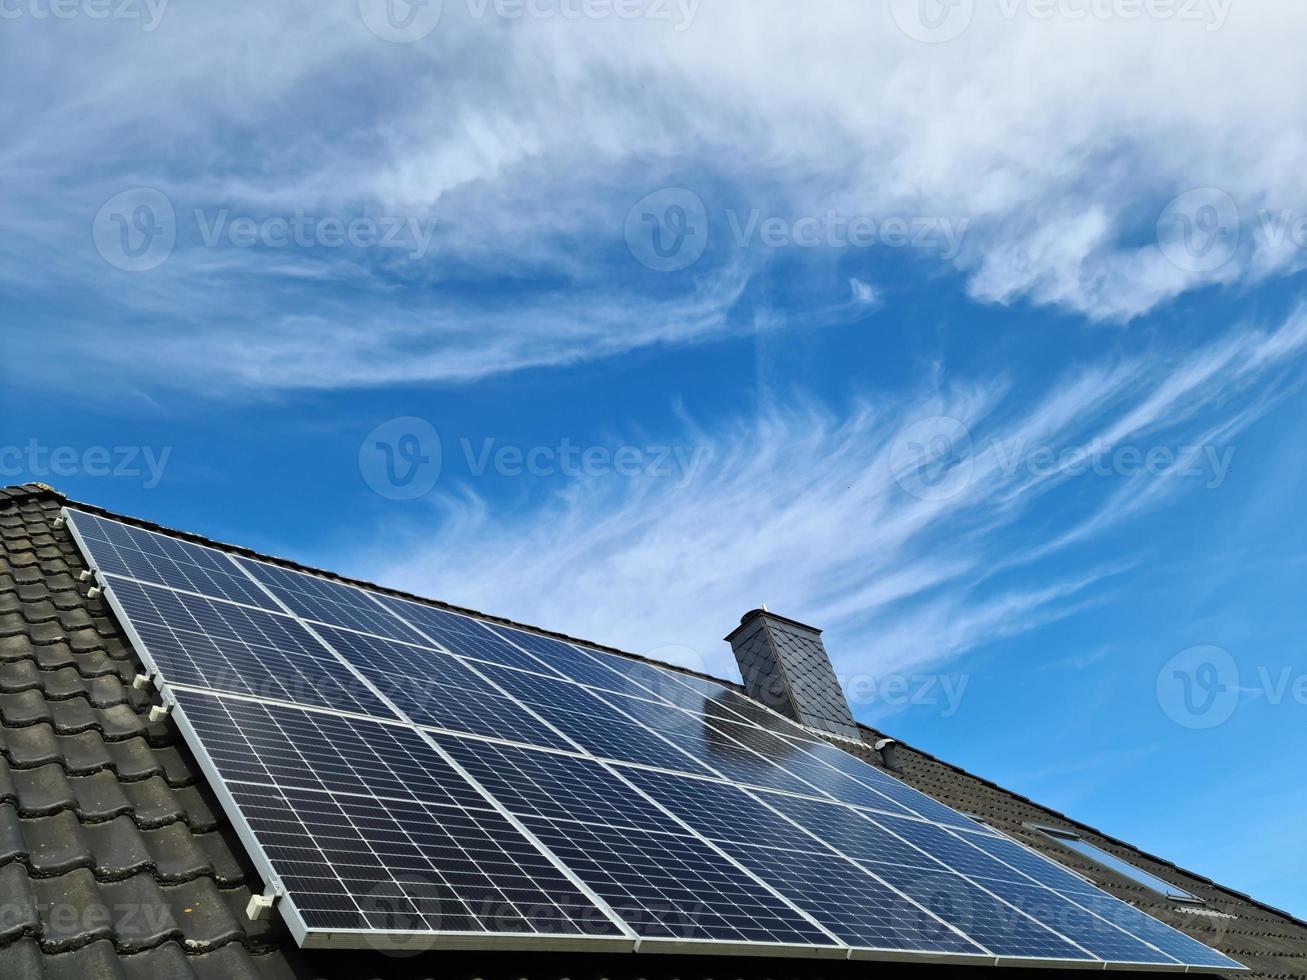 Paneles solares que producen energía limpia en el techo de una casa residencial en Alemania foto